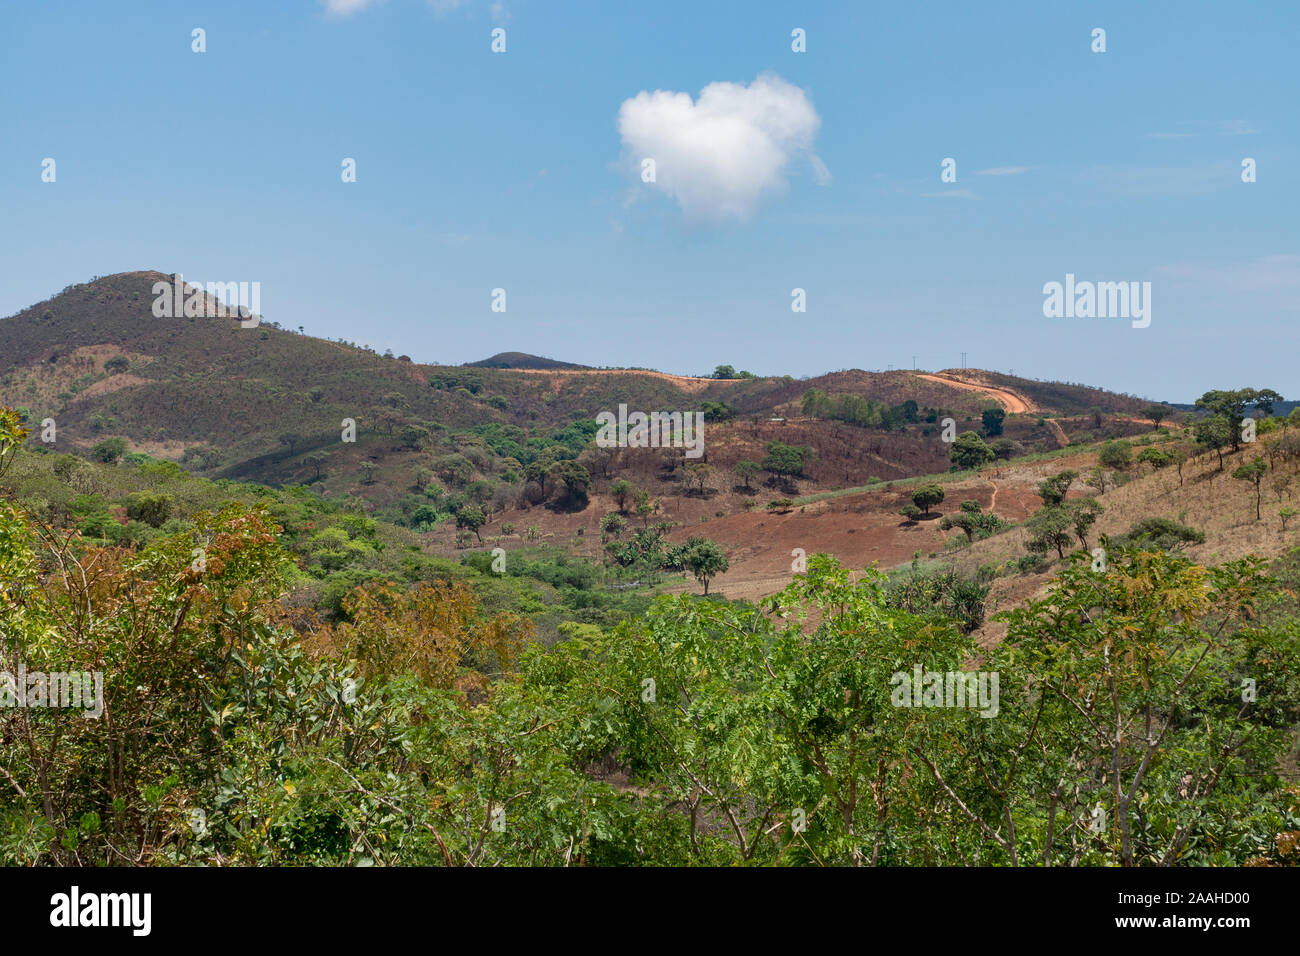 Terrain montagneux dans un paysage agricole du nord du Malawi Banque D'Images